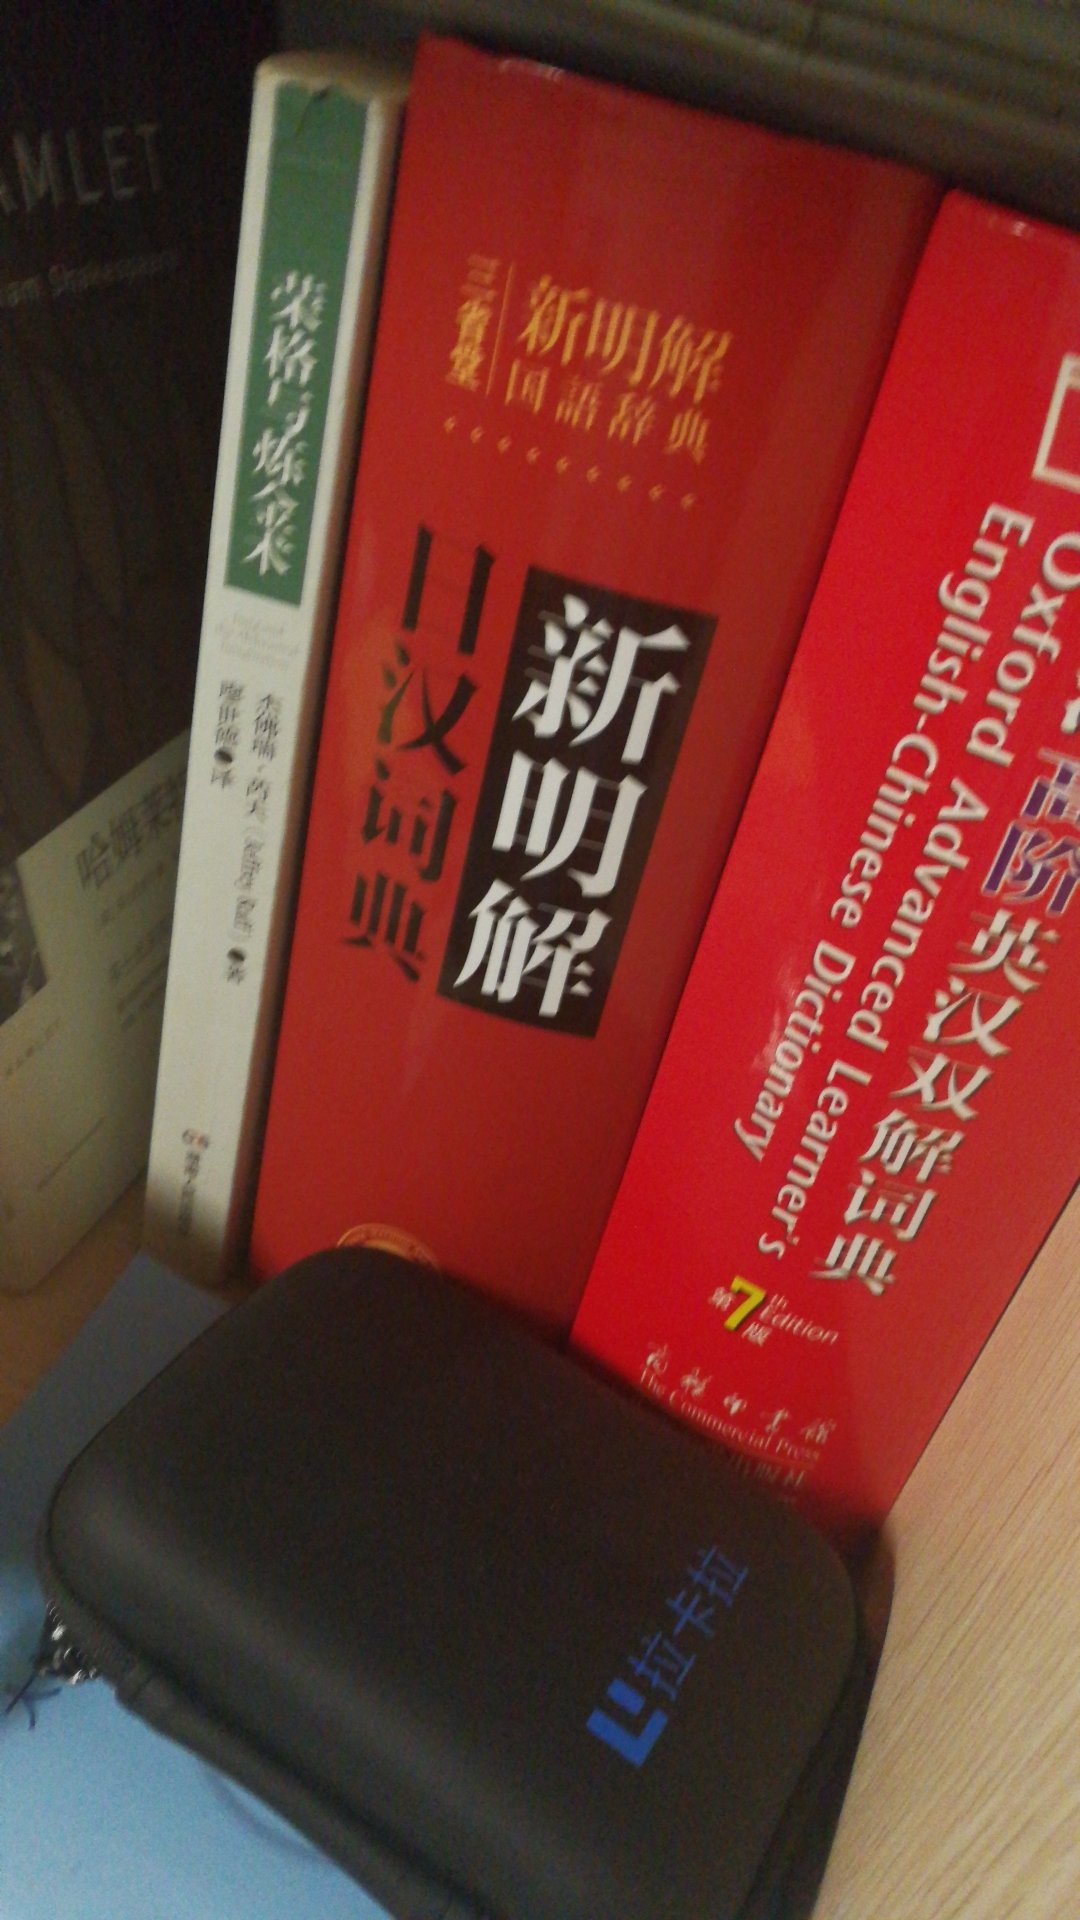 中日文对照的日语句型词典，日语学习的工具书，每一个句型都有例句，中日对照，非常实用。最重要的是，译者中有自己的老师，必须支持一下。